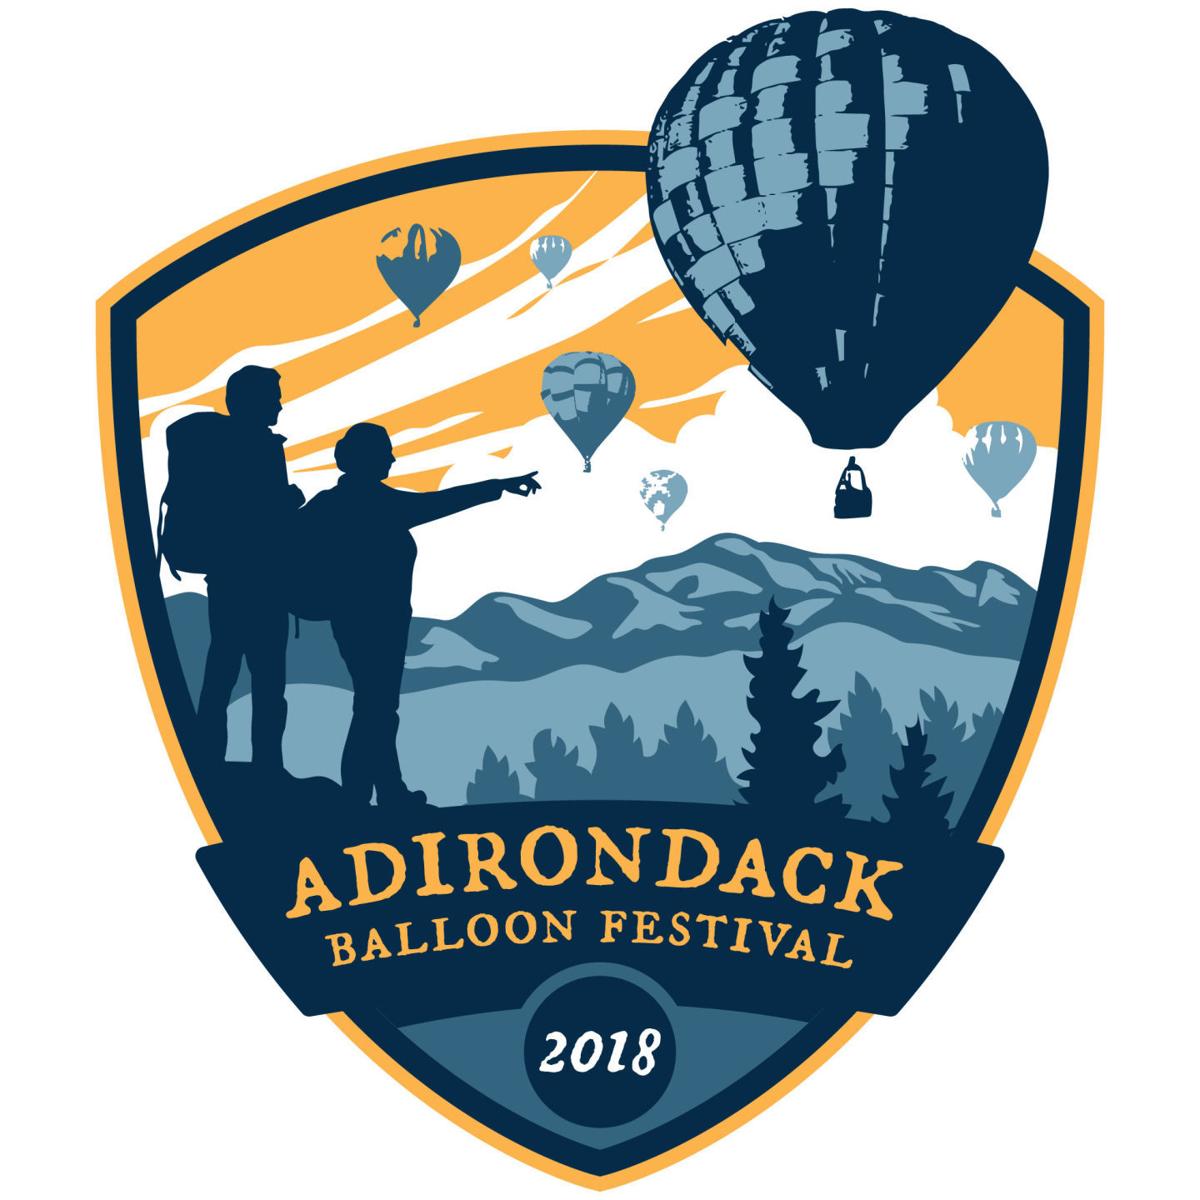 Adirondack Balloon Festival announces special balloons, schedule